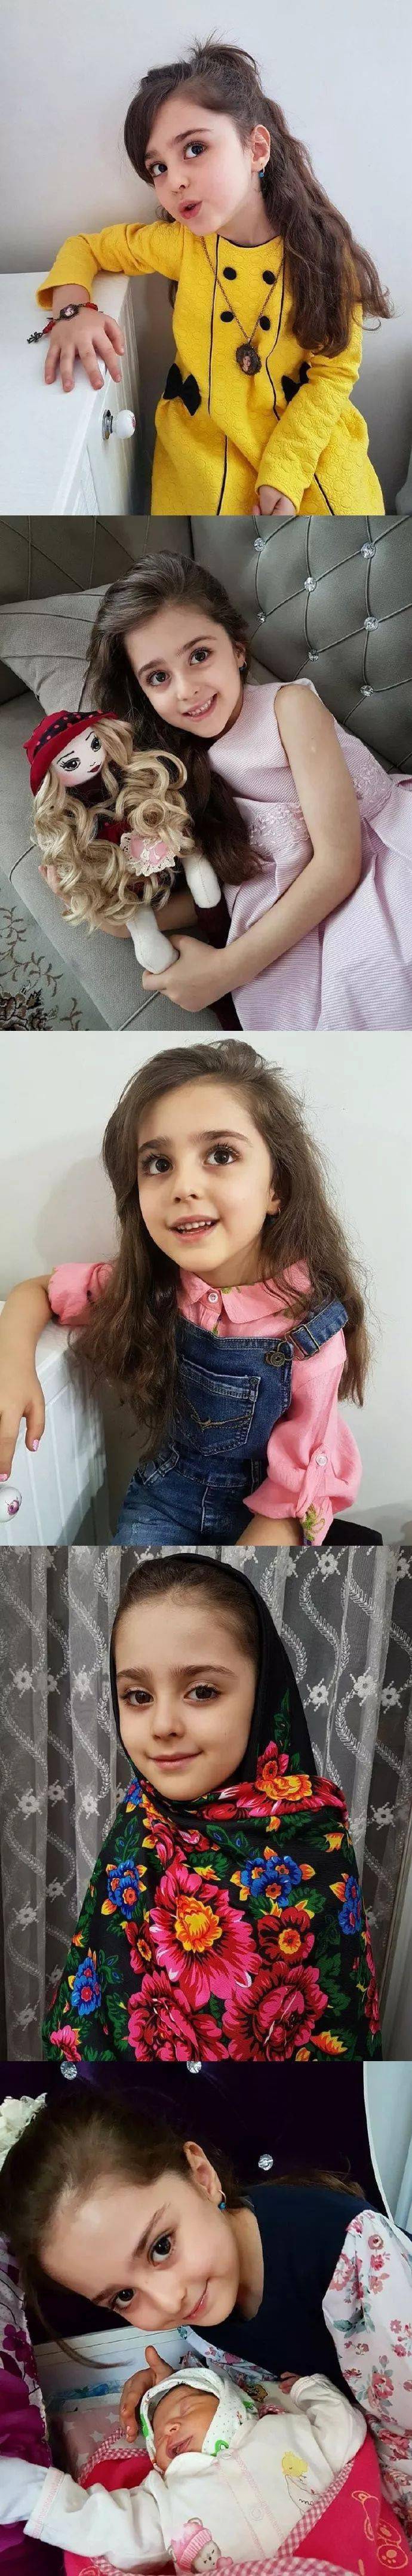 伊朗8岁小女孩被称为全球最美因为太美父亲辞职做贴身保镖